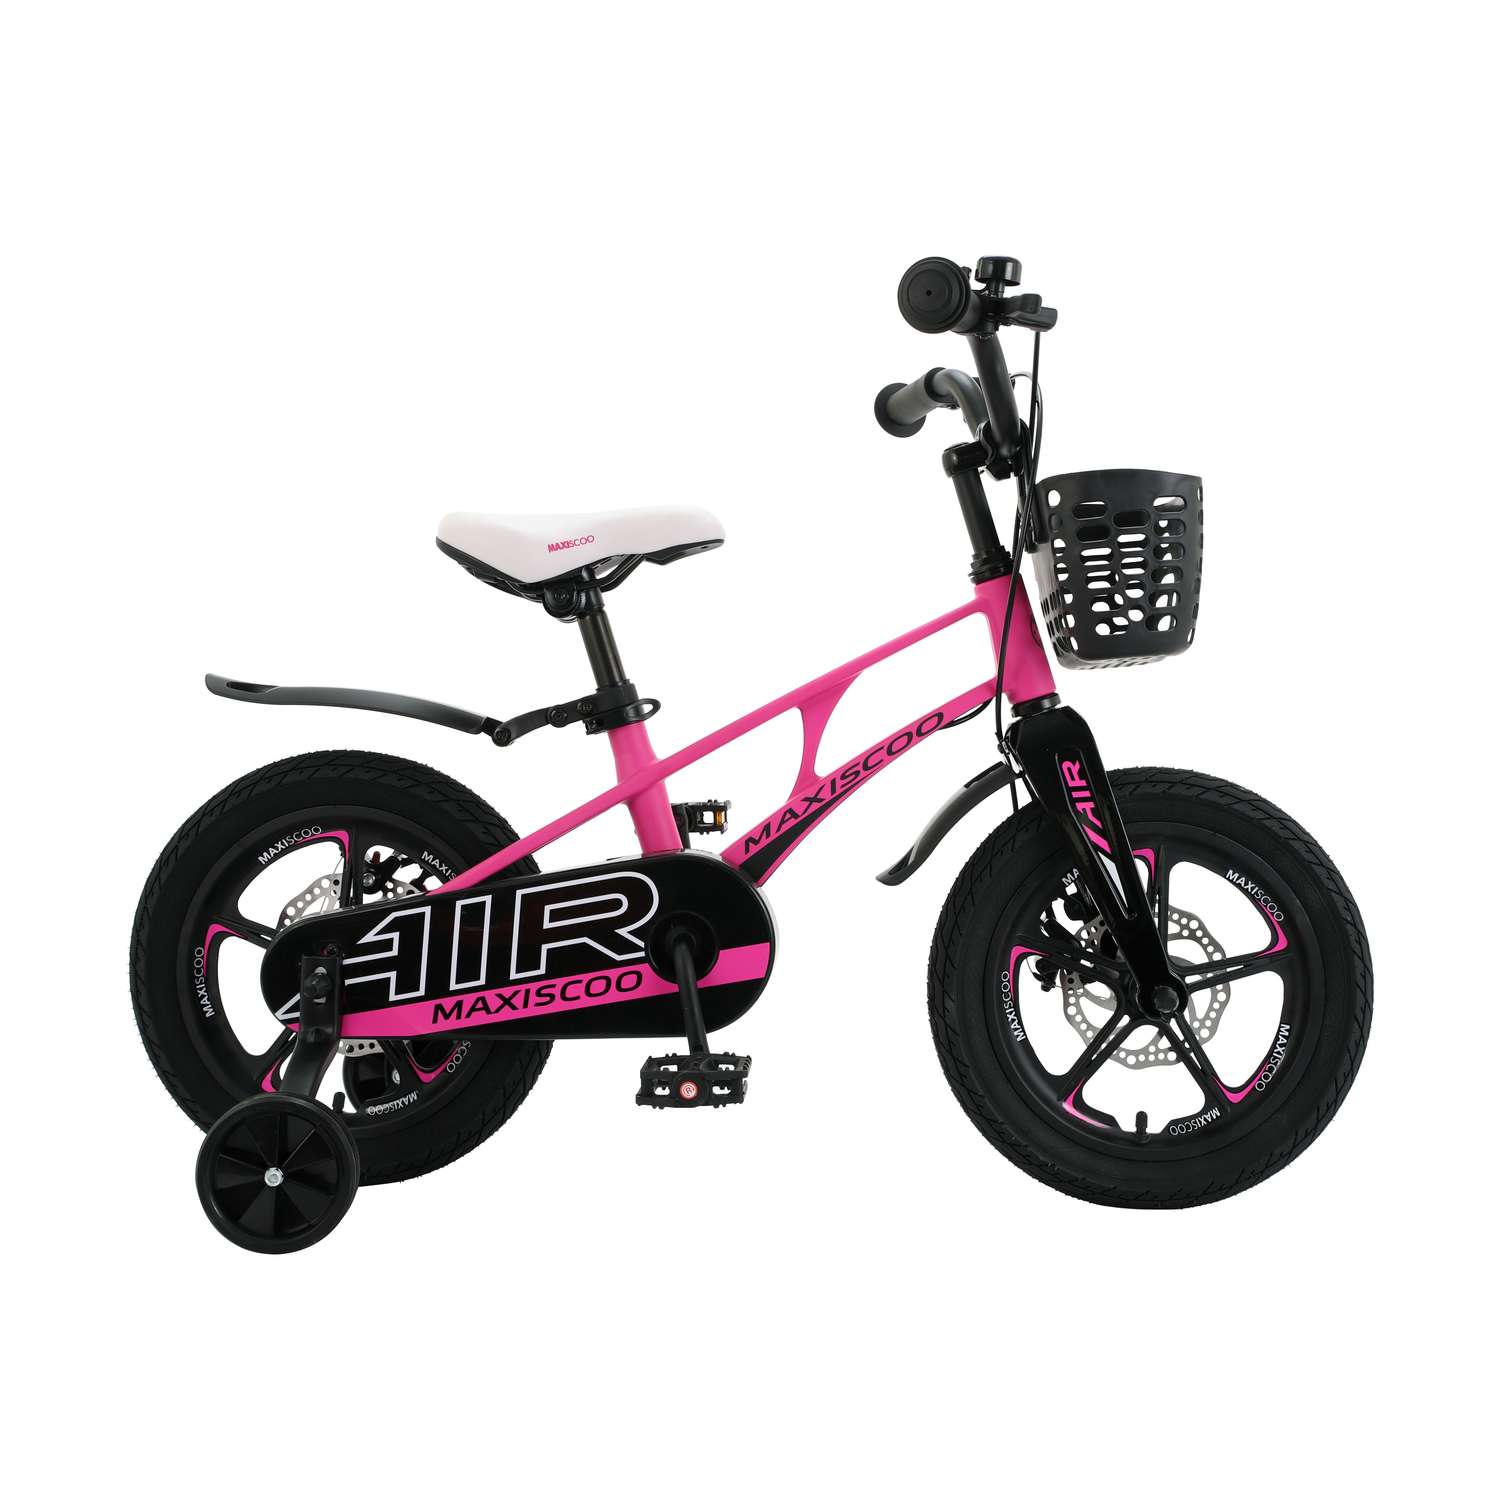 Детский двухколесный велосипед Maxiscoo Air делюкс плюс 14 розовый матовый - фото 1